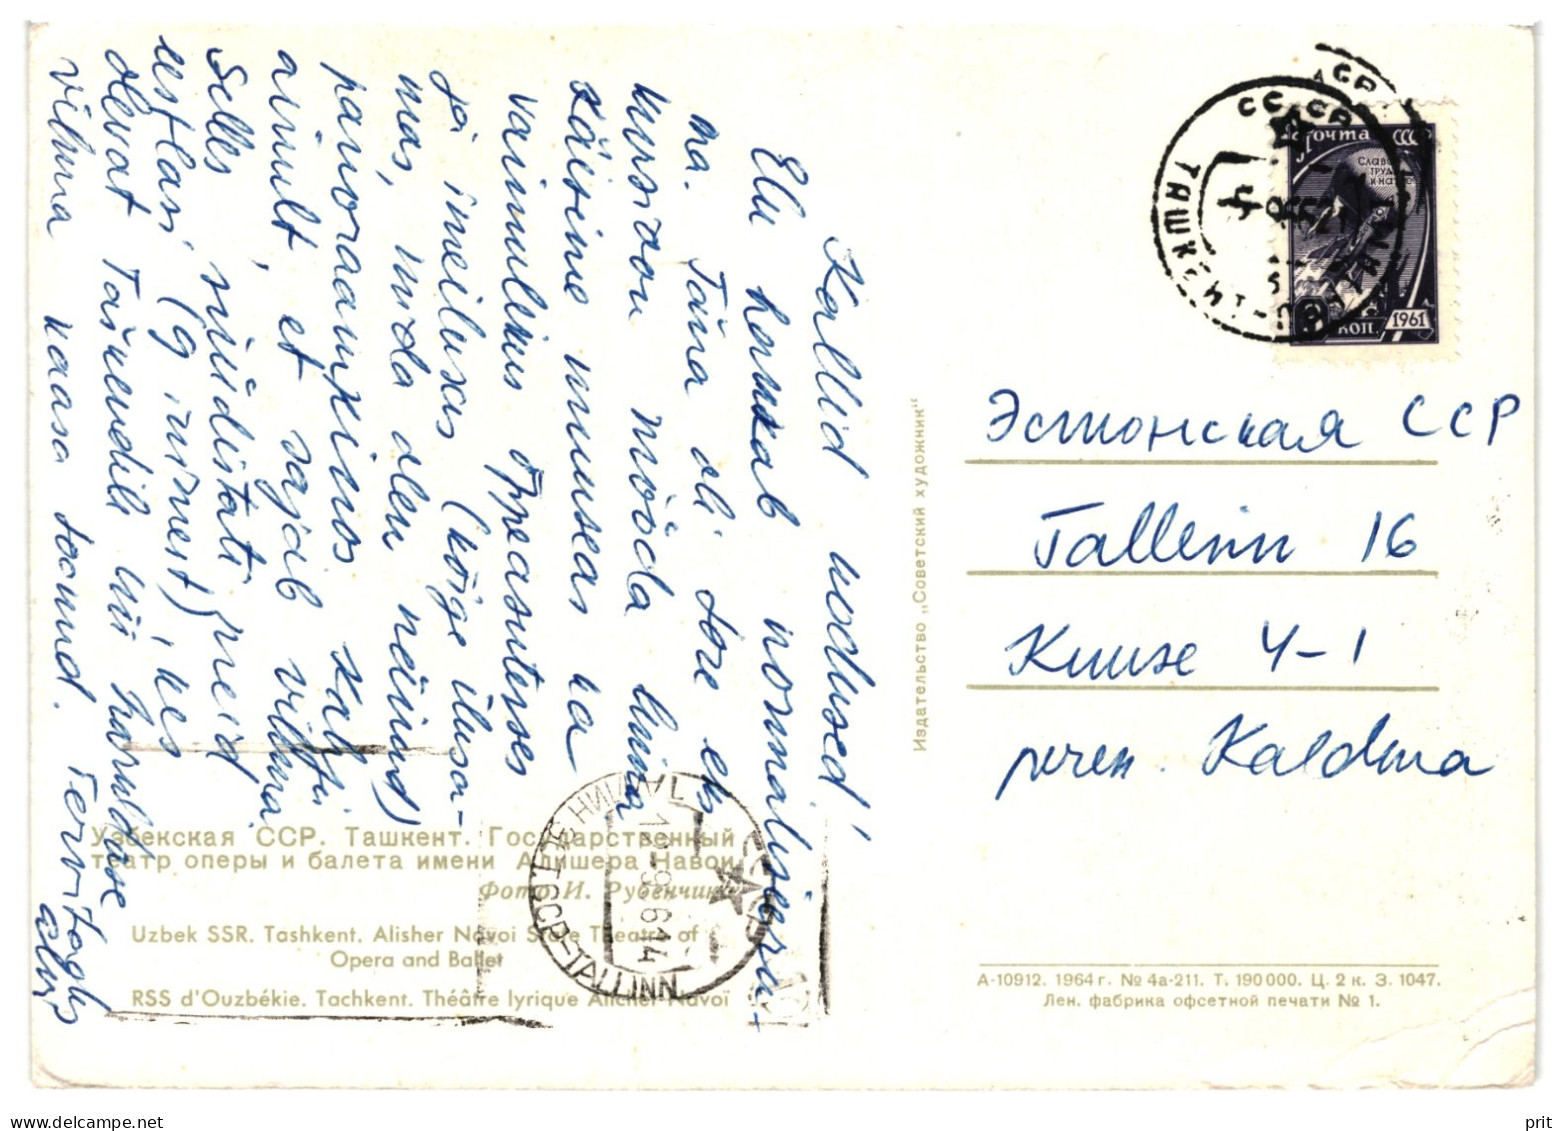 Tashkent Alisher Navoiy Opera Theater Soviet Uzbekistan USSR 1961 Used Postcard To Tallinn, Soviet Estonia - Usbekistan